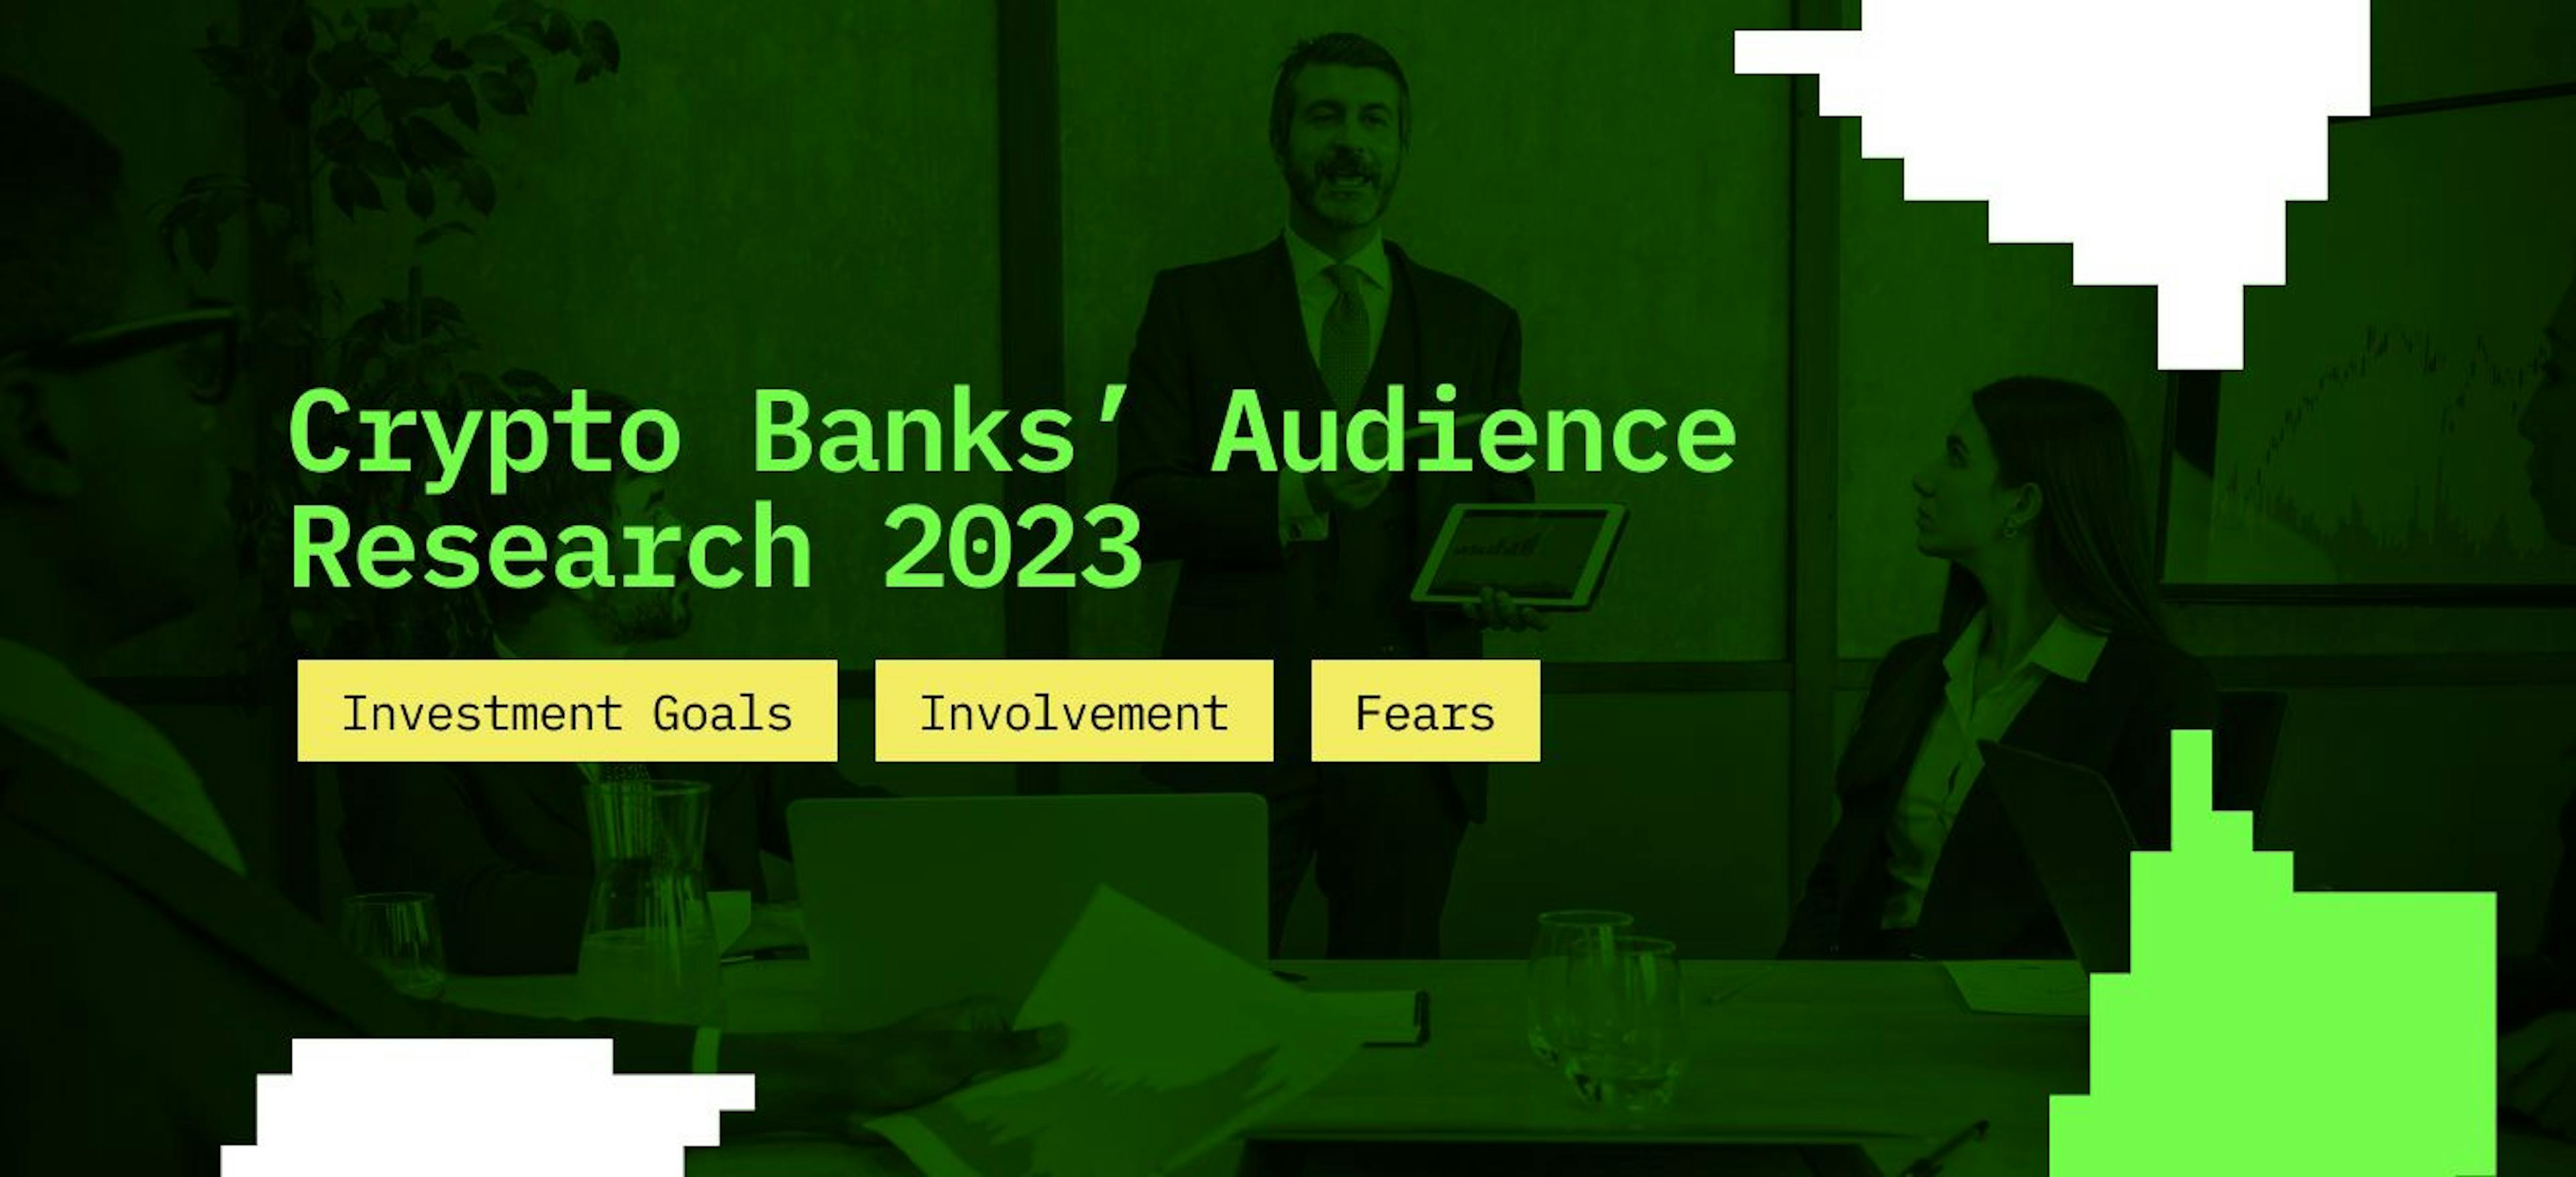 featured image - 2023 年加密货币银行的受众研究：投资目标、参与度和恐惧